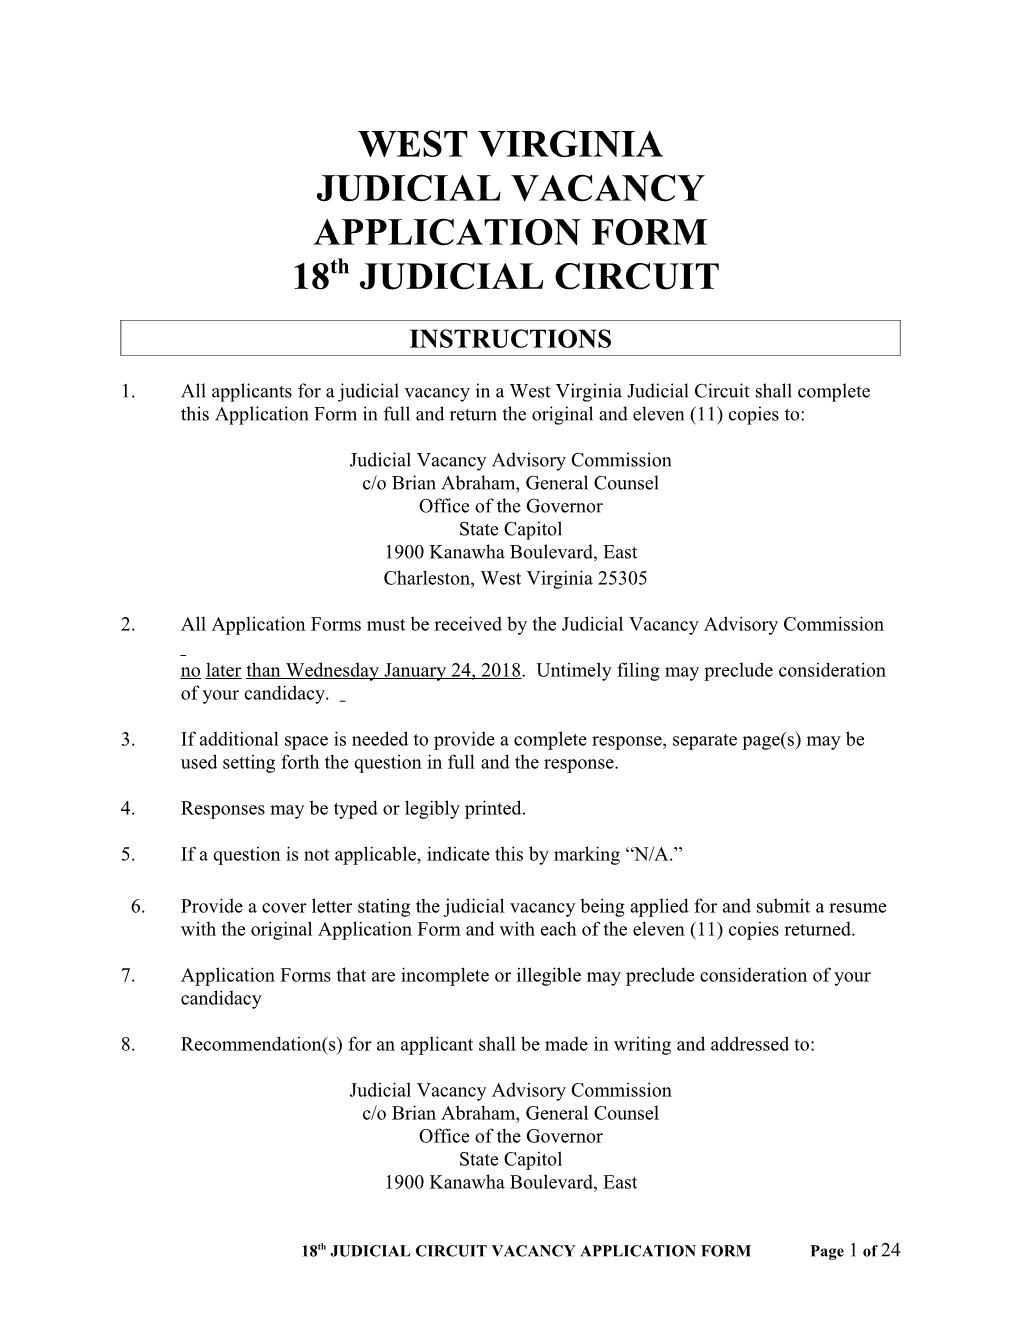 Judicial Vacancy